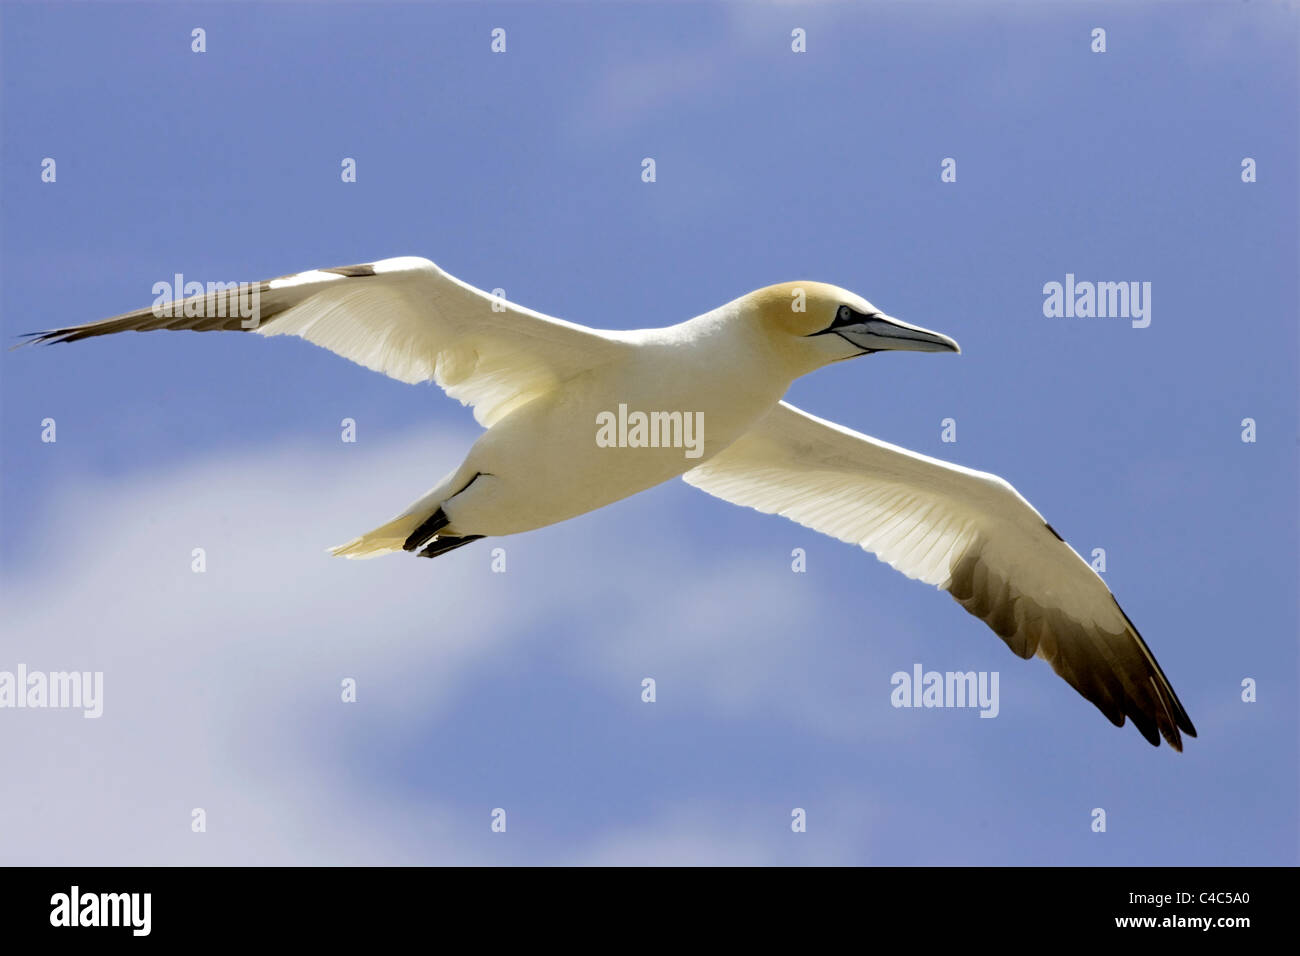 Gannet in flight, wings spread Stock Photo